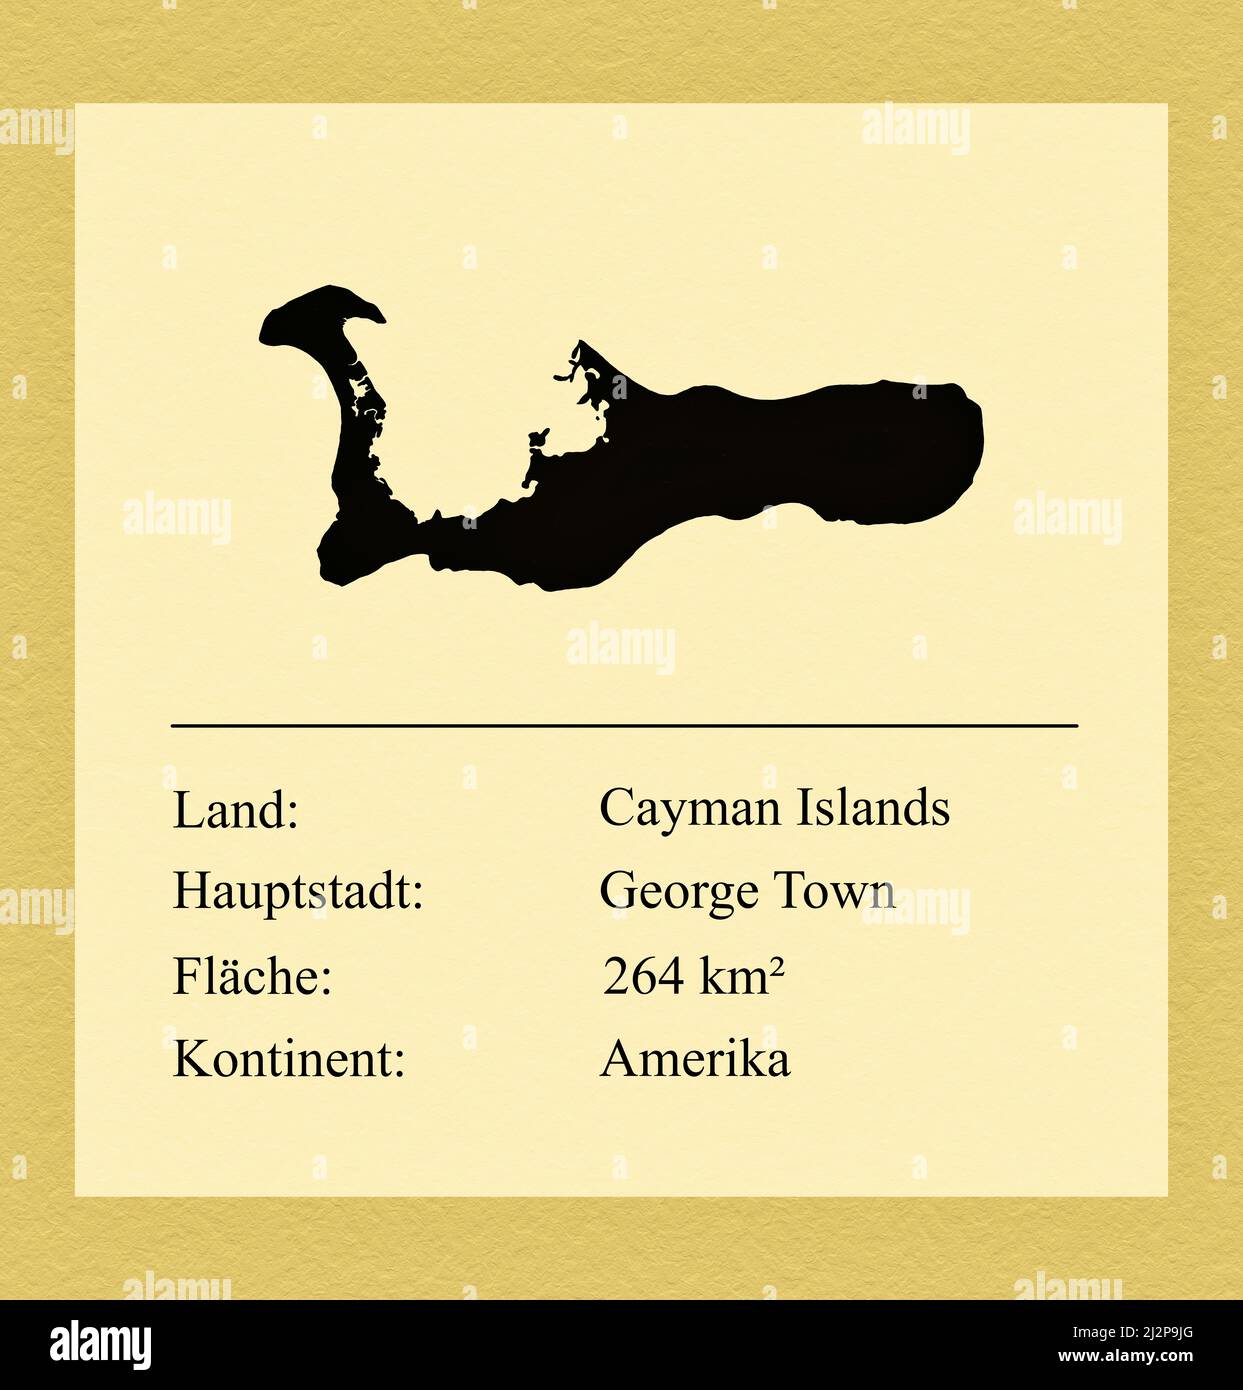 Umrisse des Landes Cayman Islands, darunter ein kleiner Steckbrief mit Ländernamen, Hauptstadt, Fläche und Kontinent Foto Stock